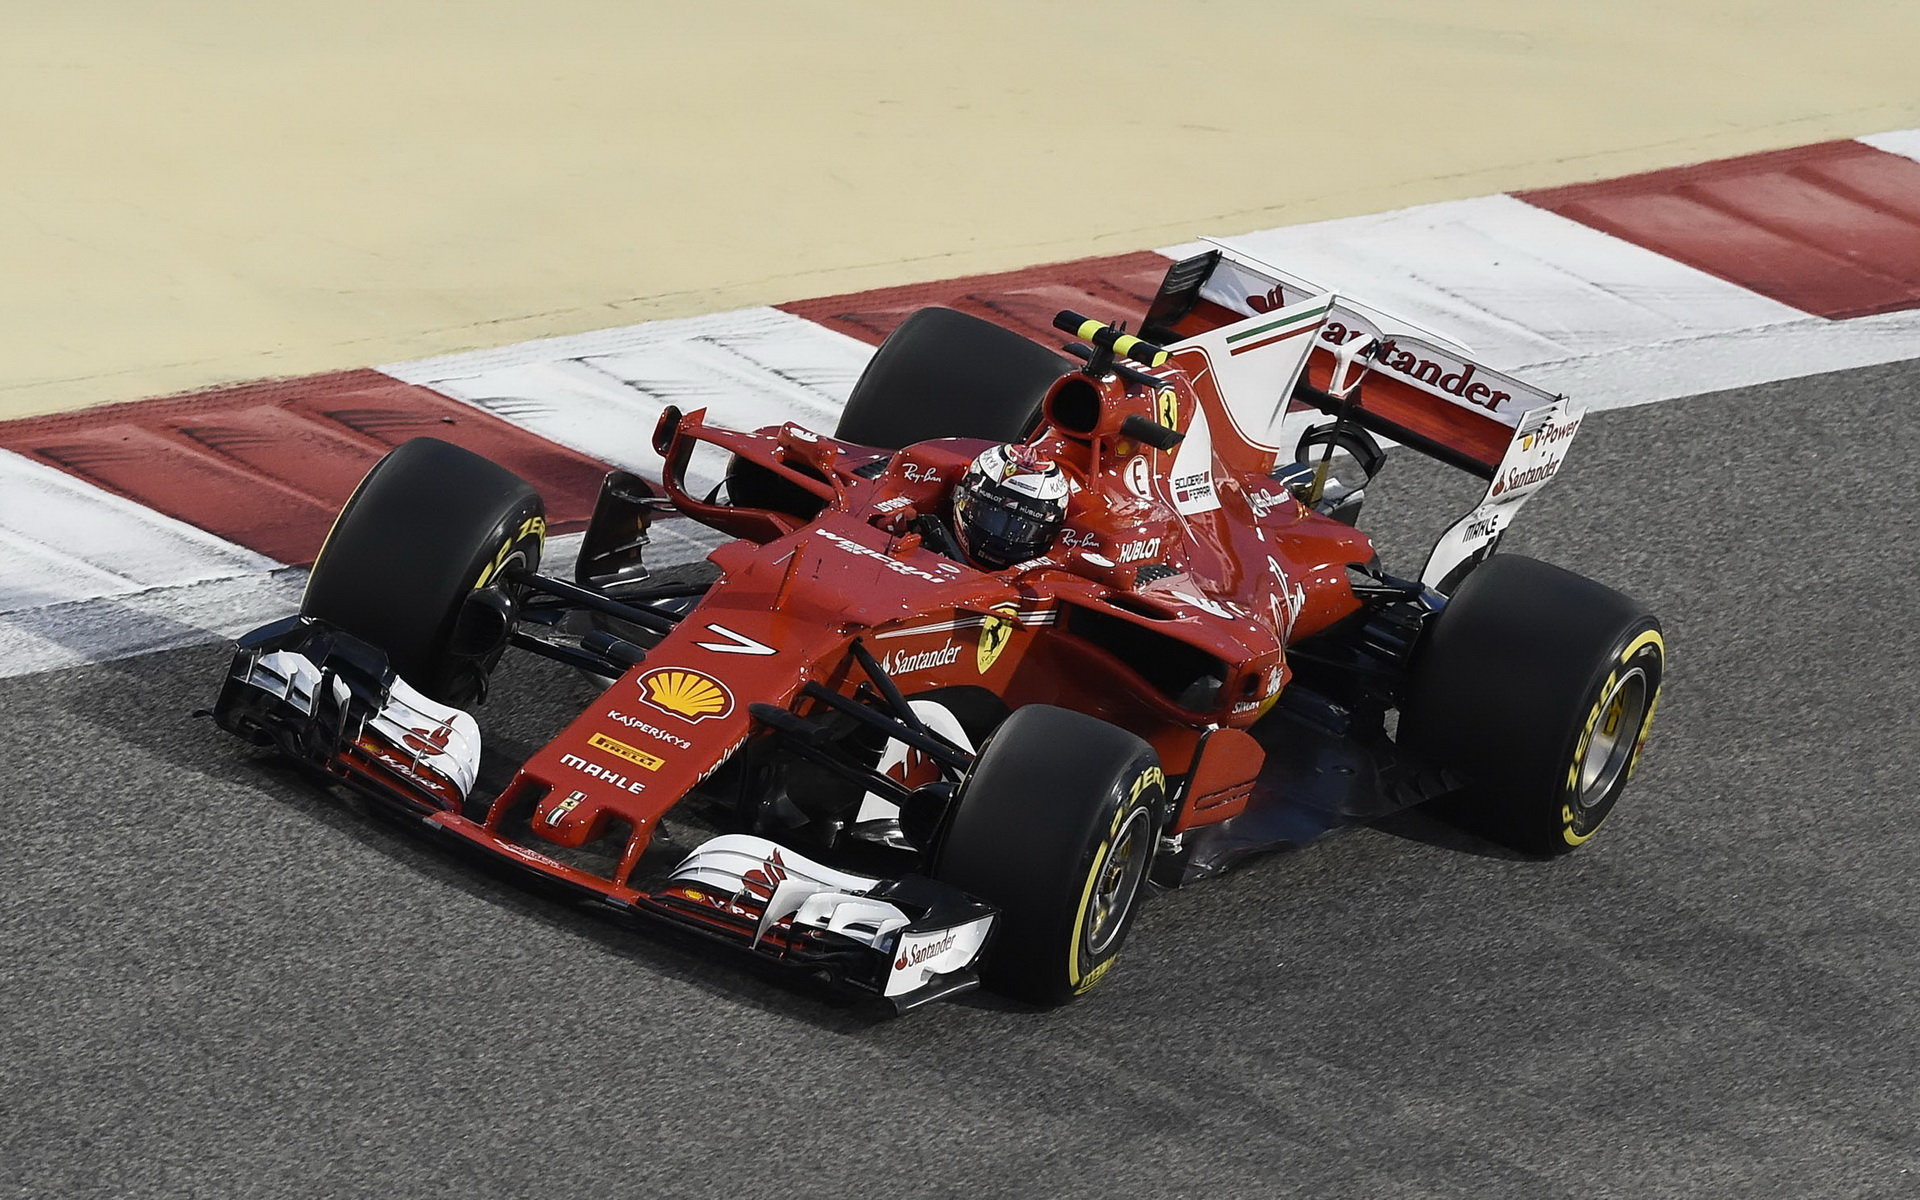 Kimi Räikkönen při tréninku v Bahrajnu